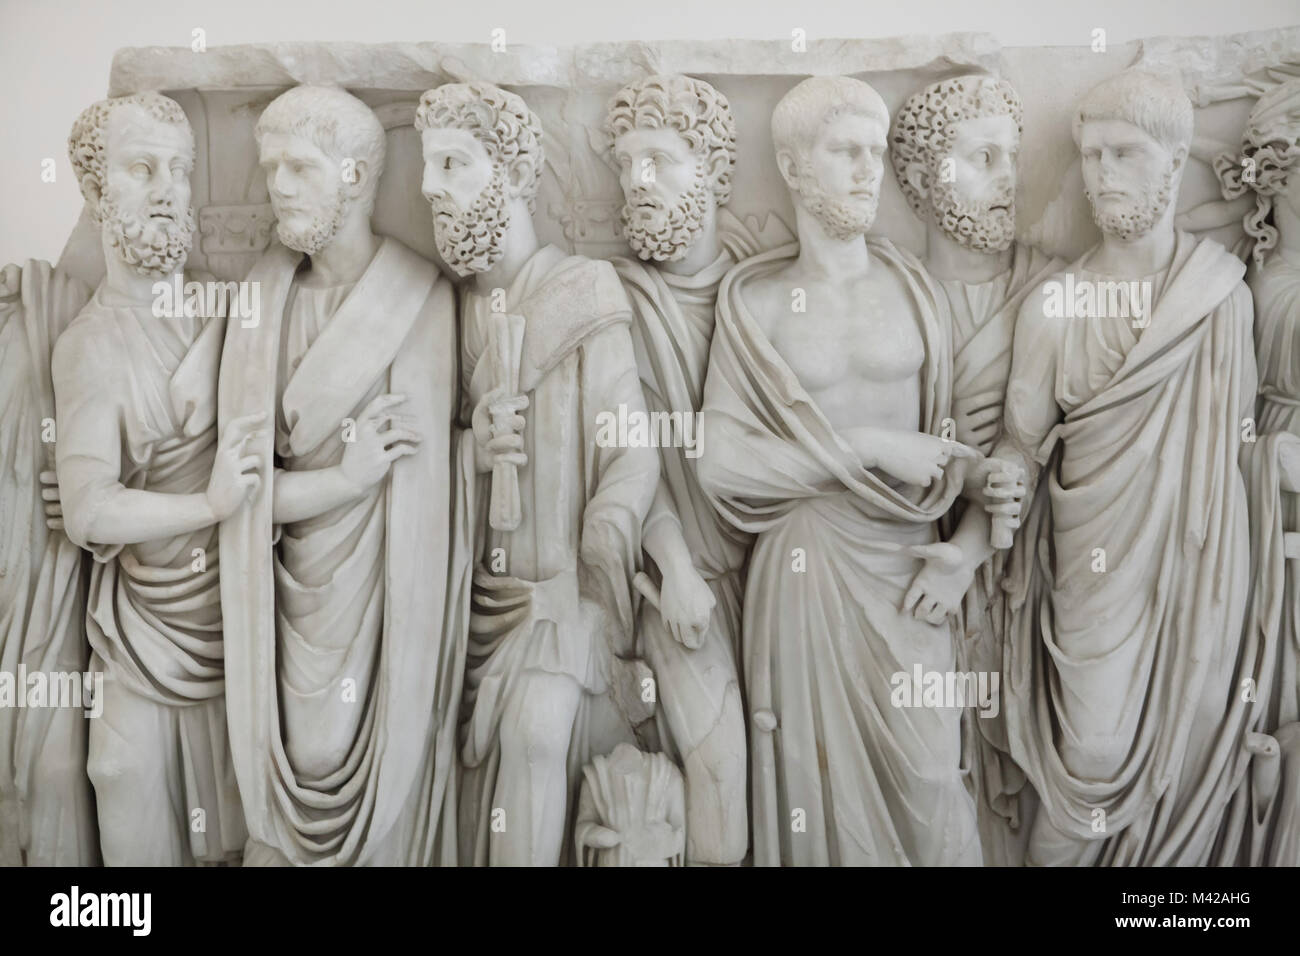 Sarcófago con togate hombres, conocidos como los sarcófagos de los hermanos. Sarcófago de mármol romano desde la mitad del siglo III D.C. de la colección Farnese en exhibición en el Museo Arqueológico Nacional de Nápoles, Campania, Italia. Foto de stock